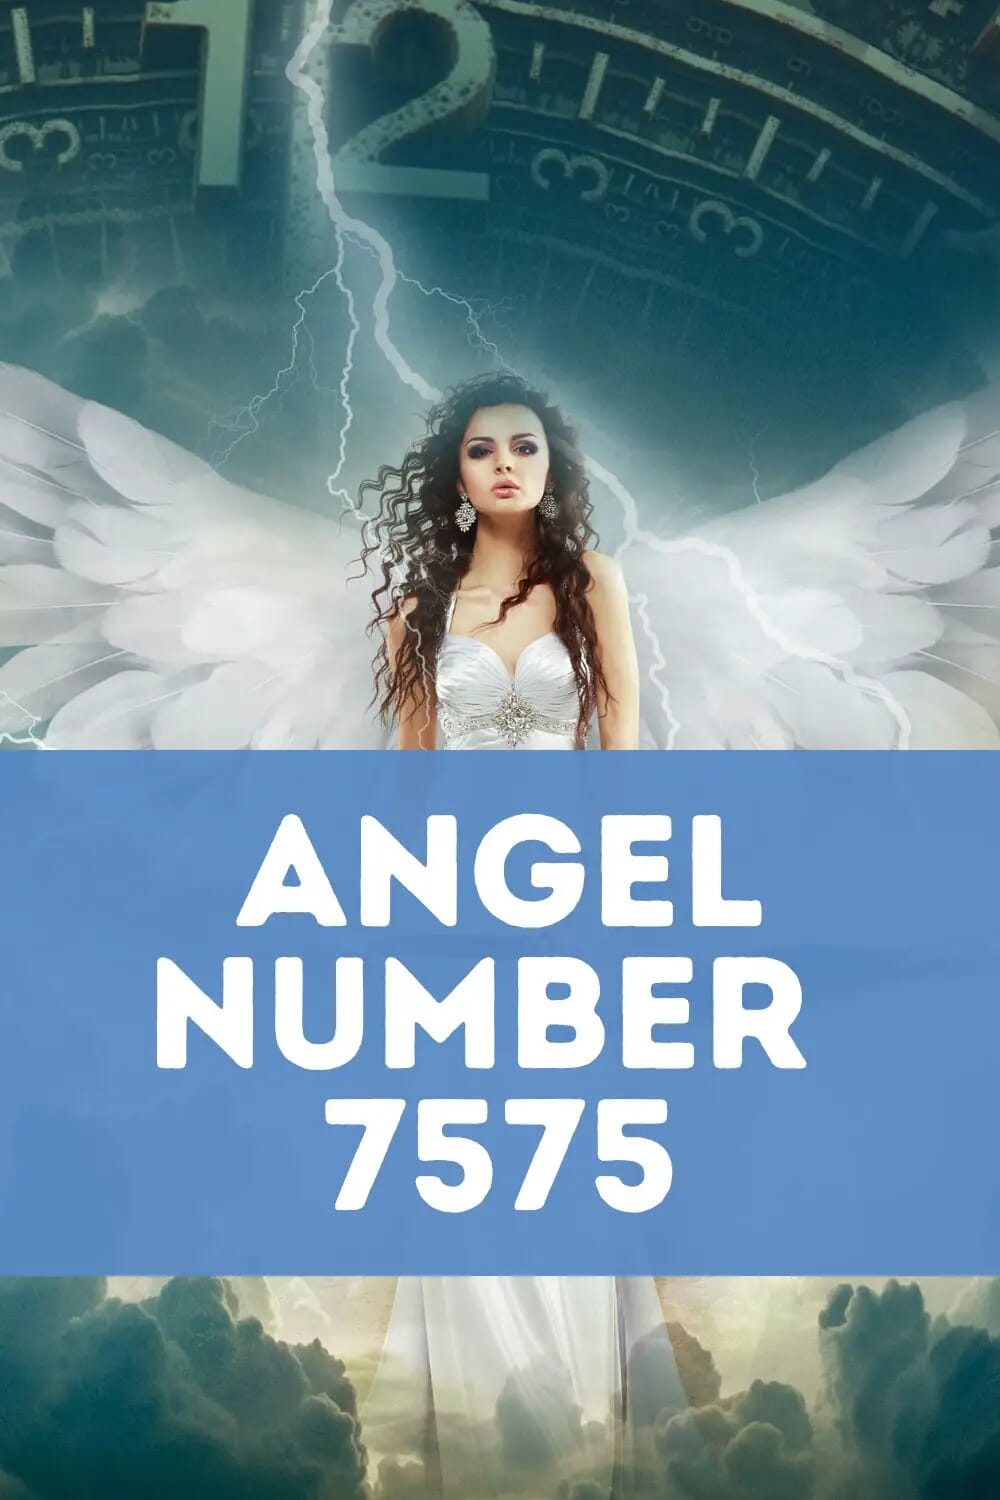 Angel number 7575